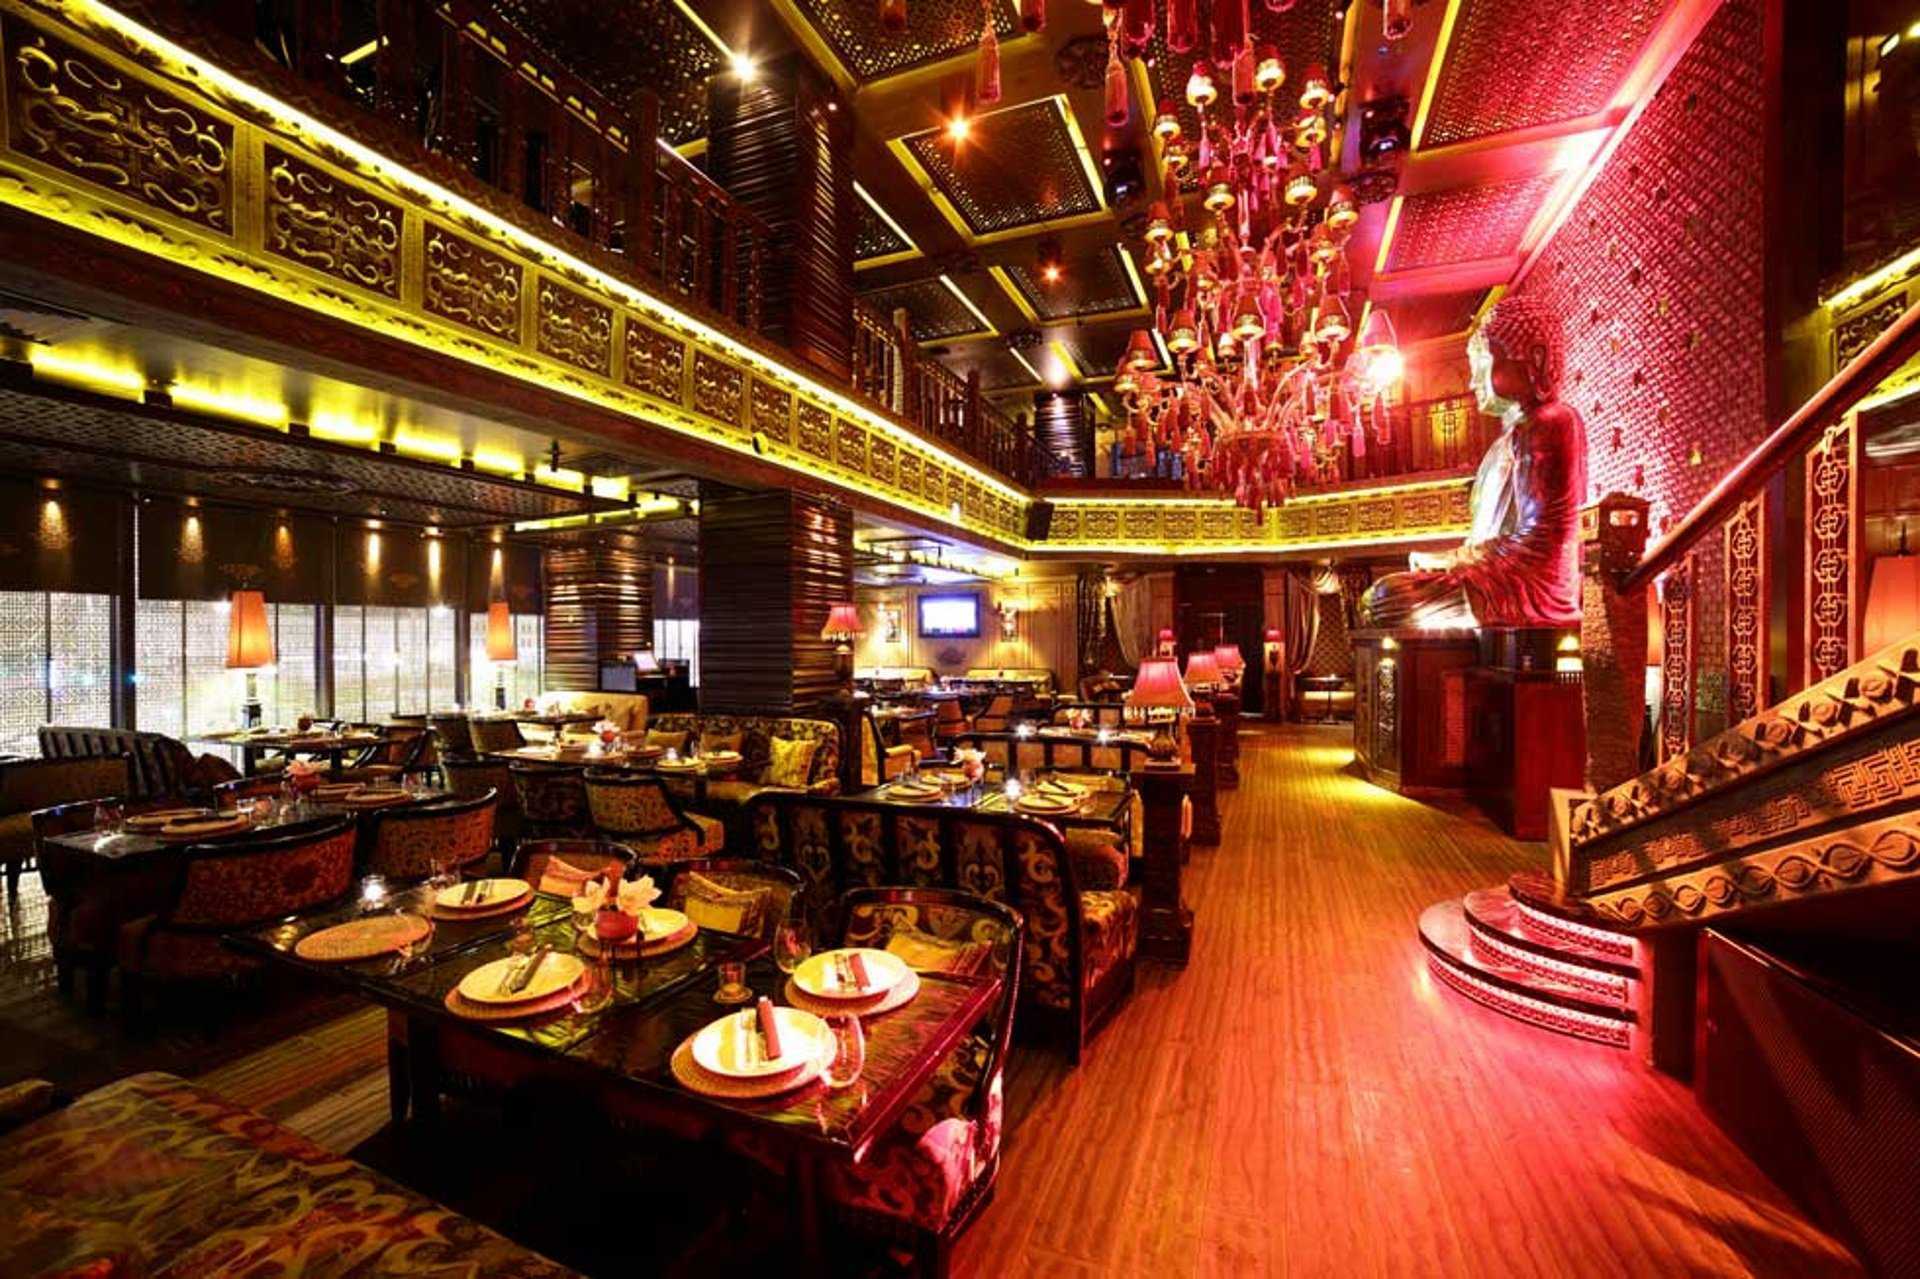 Buddha-bar в санкт-петербурге: лаунж-ресторан мировой сети с уникальным деревянным интерьером